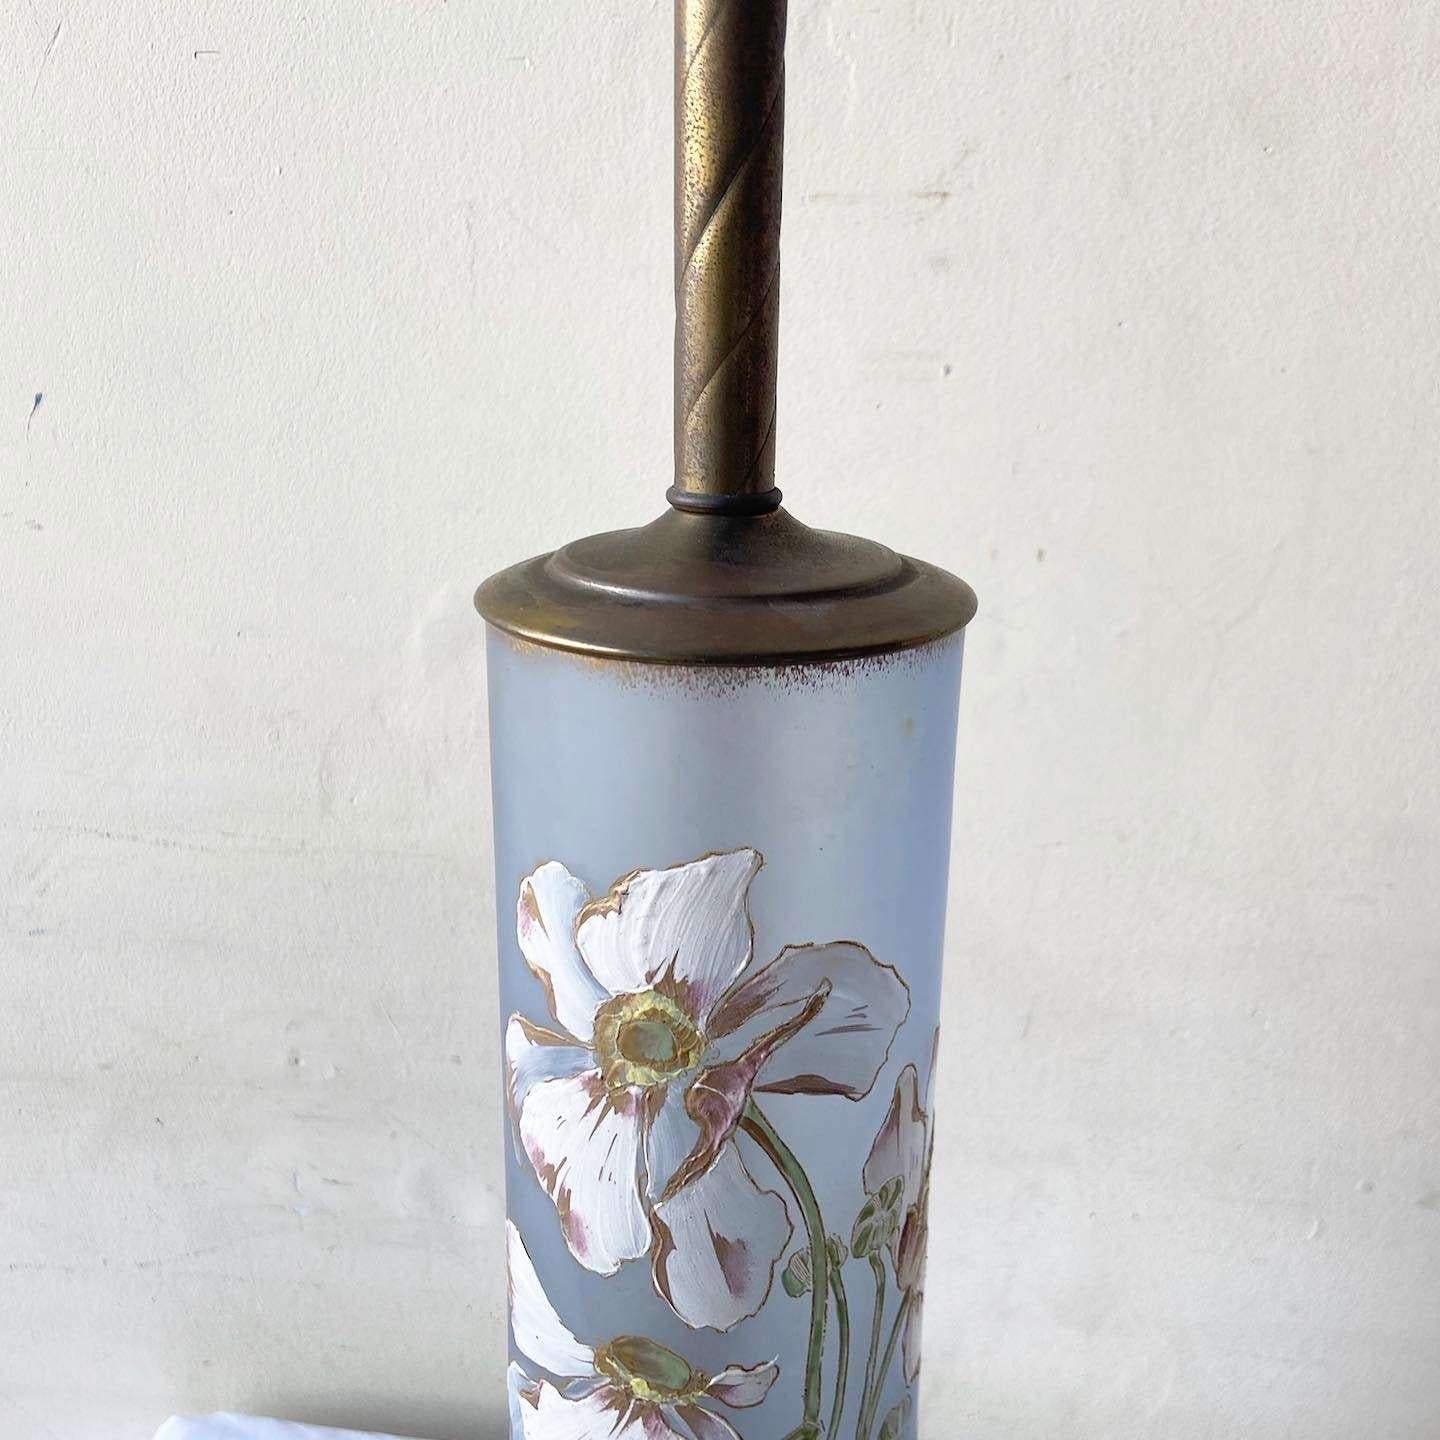 Außergewöhnliche Vintage-Glaslampe in einer goldfarbenen Holzvase mit Messingstiel. Mit einer handgemalten Blume über einem blauen Glas.

3-Wege-Beleuchtung mit zusätzlichem Schalter am Sockel.
